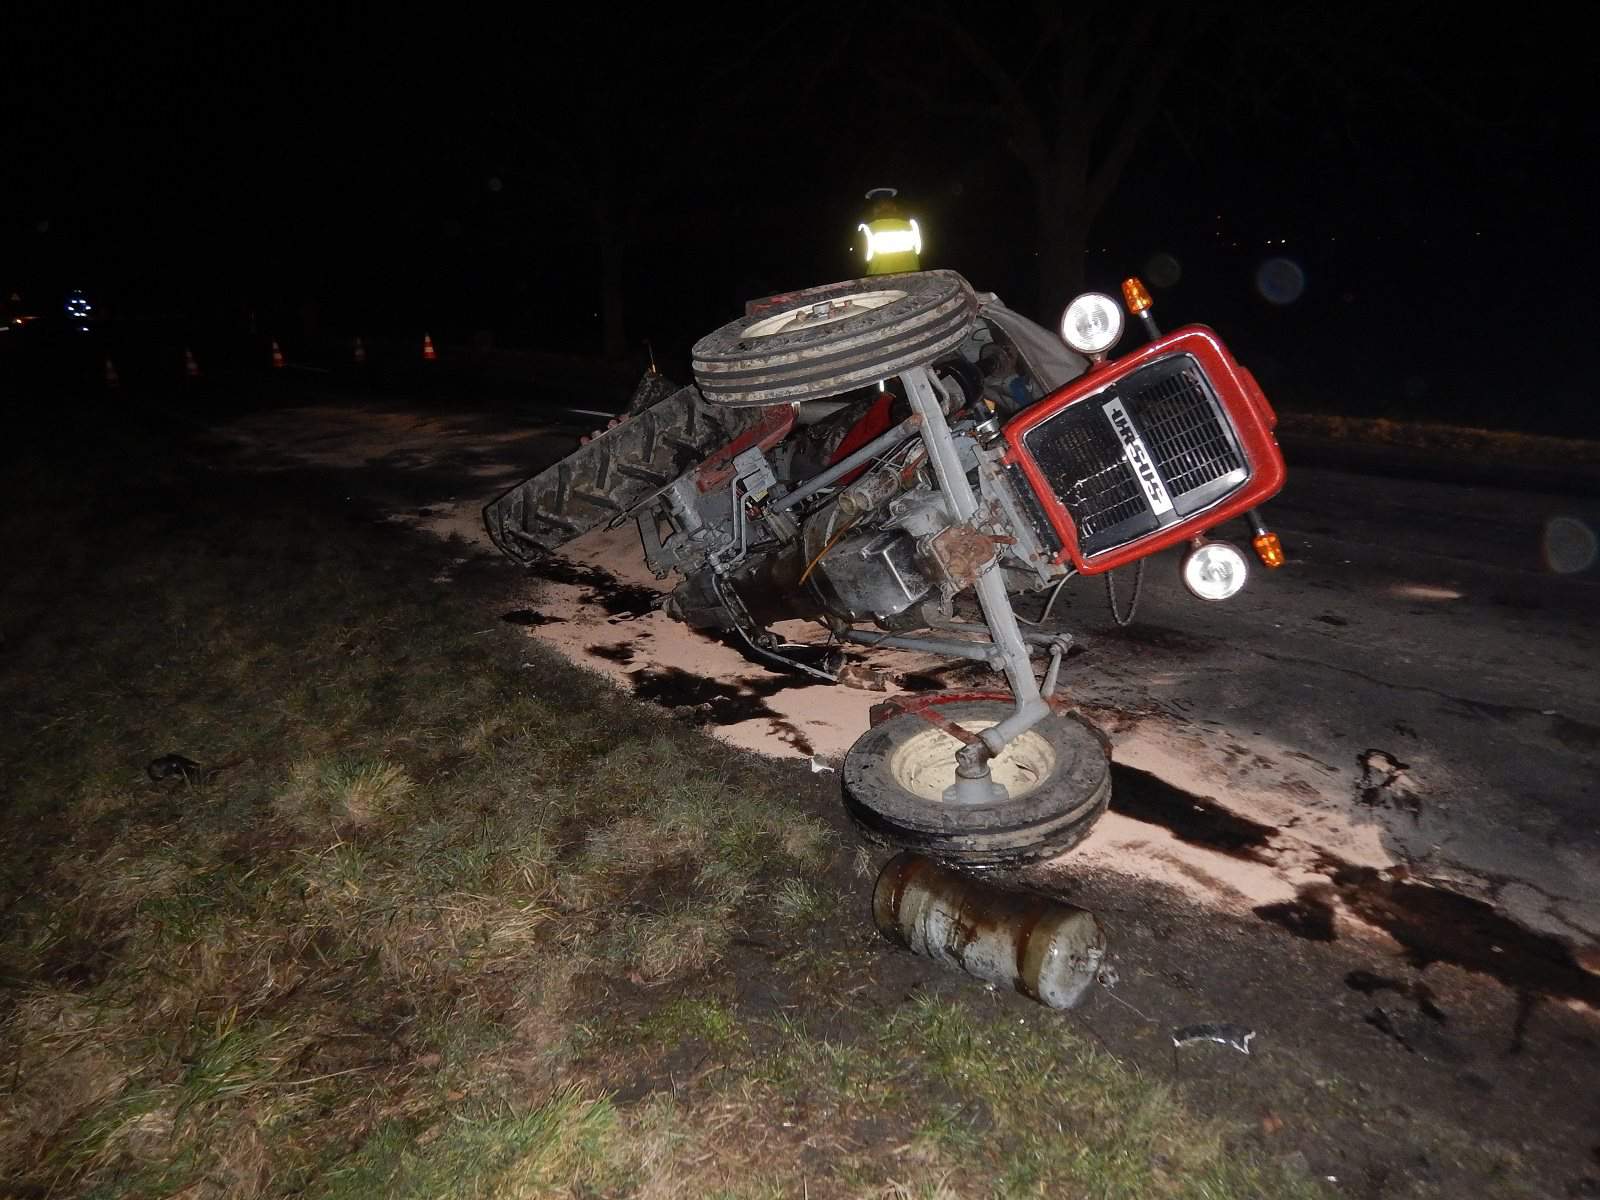 Chevrolet roztrzaskał ciągnik rolniczy. 33-letni rolnik trafił do szpitala!